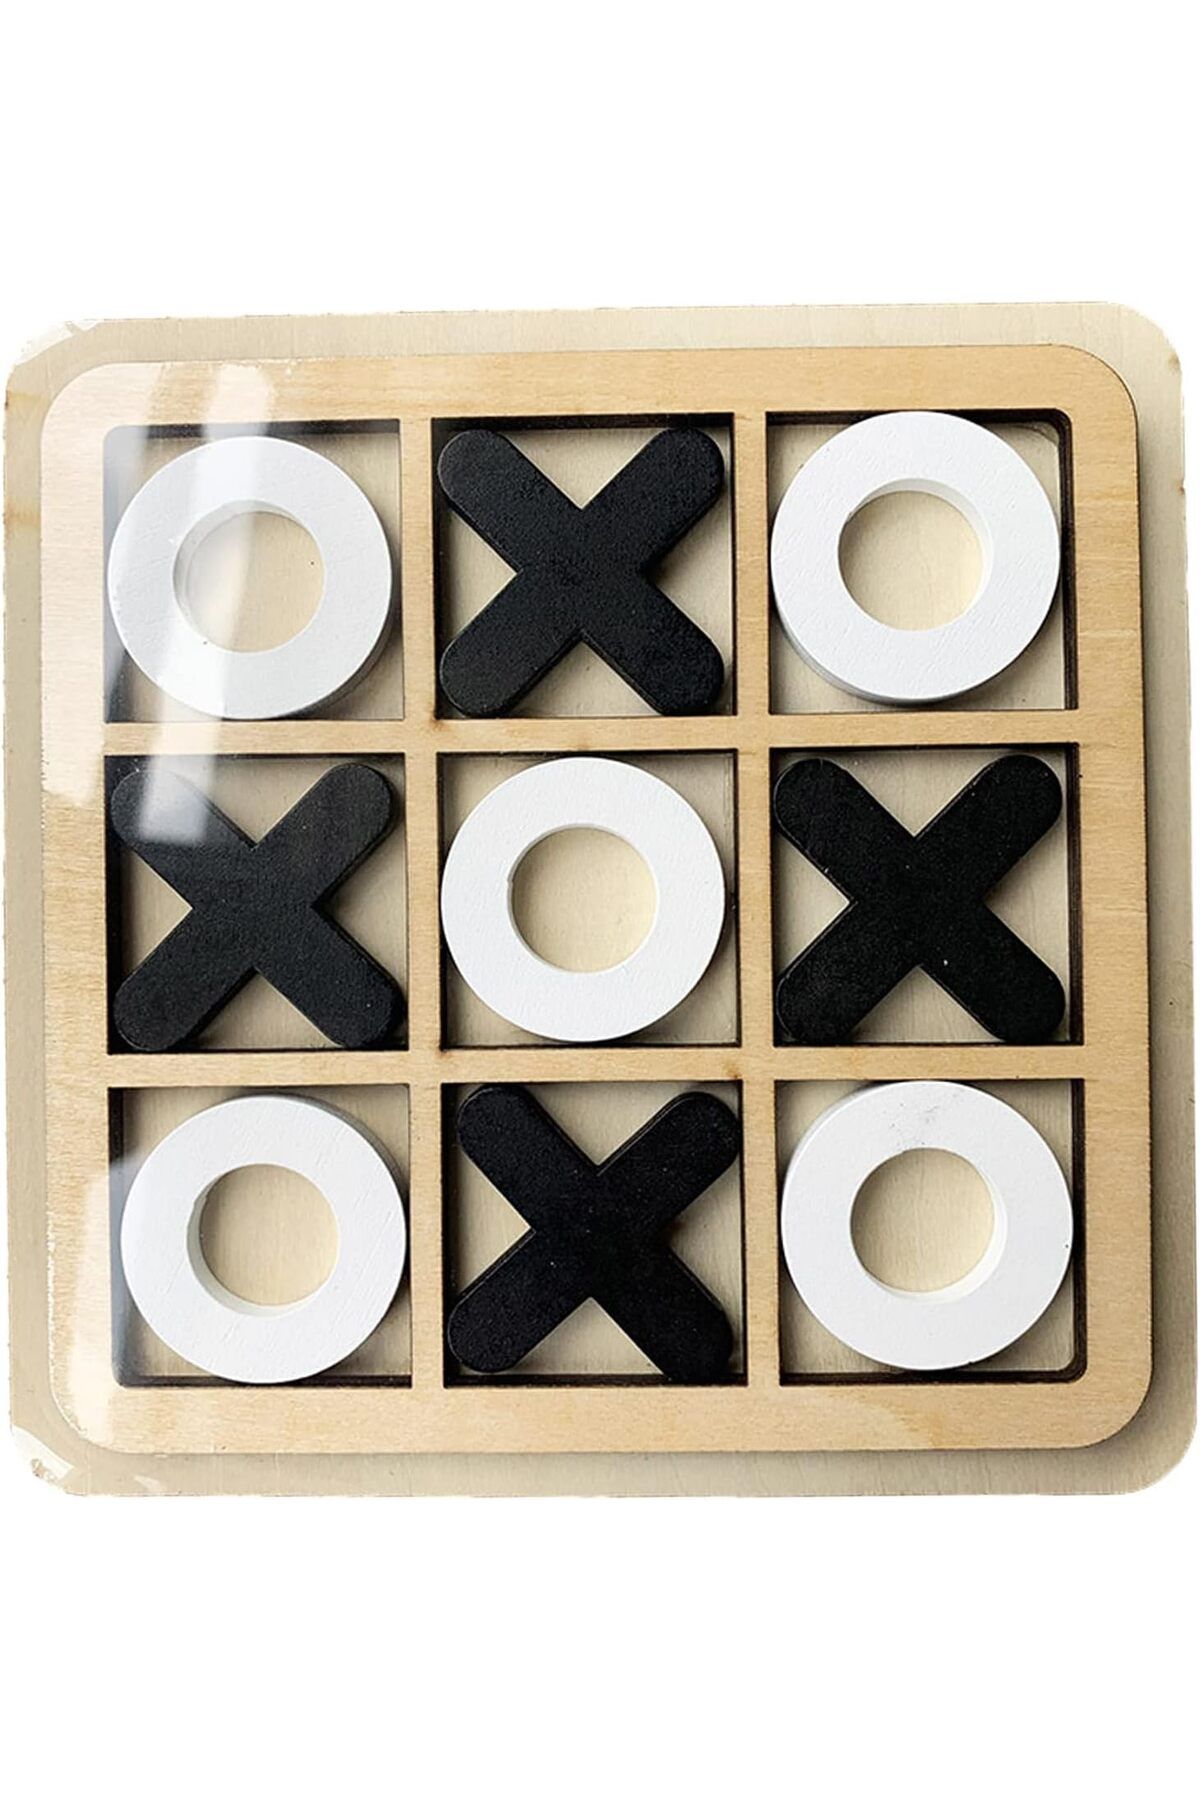 MartinaCole XO Oyunu,X & O Blokları - Eğitici Masa Oyunu, İnteraktif Strateji Zeka Bulmacası